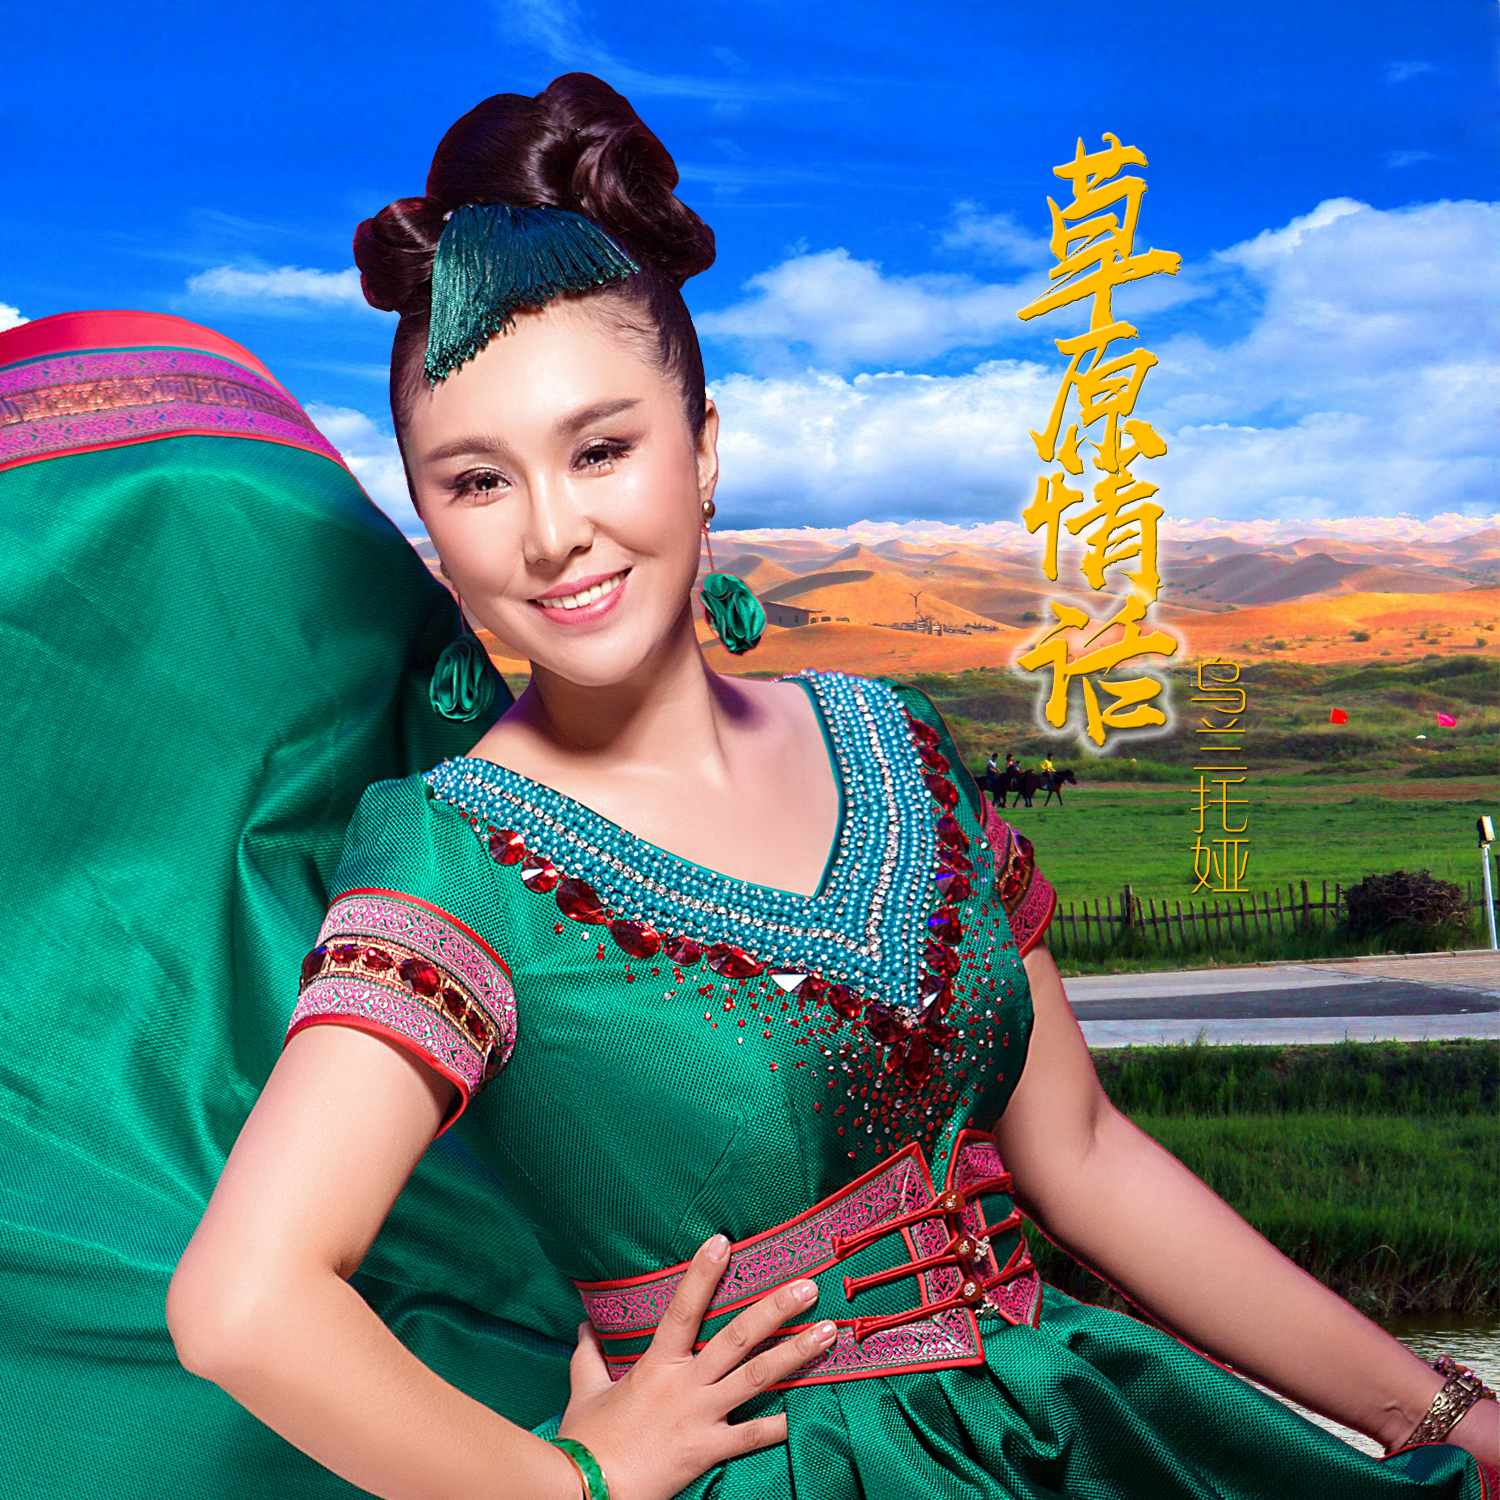 日前,知名蒙古族歌手乌兰托娅发行了最新单曲《草原情话》,甜美动人的